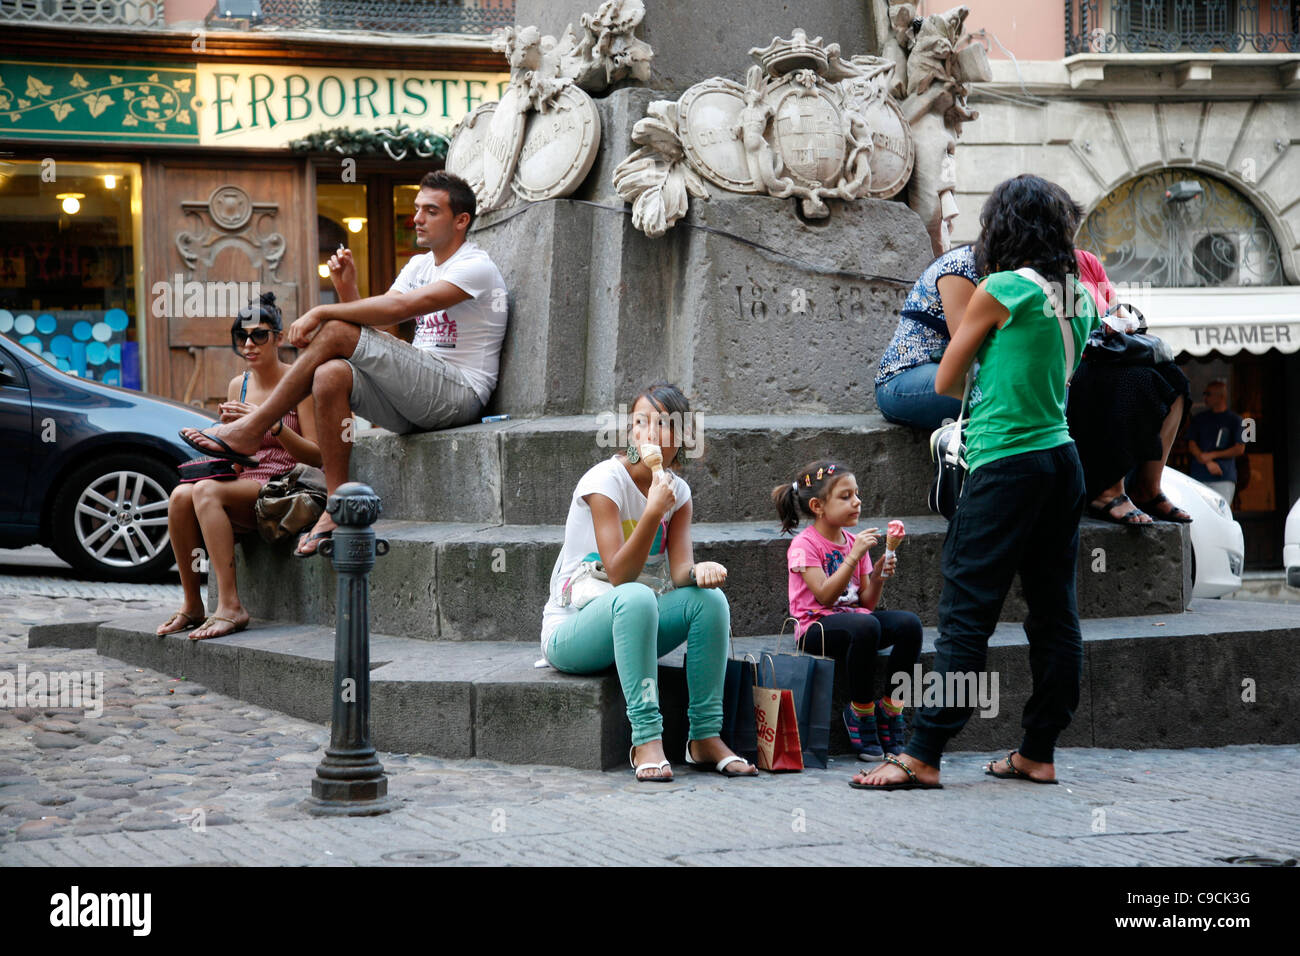 La gente a mangiare il gelato in Via Giuseppe Manno, una strada pedonale con numerosi negozi, Cagliari, Sardegna, Italia. Foto Stock